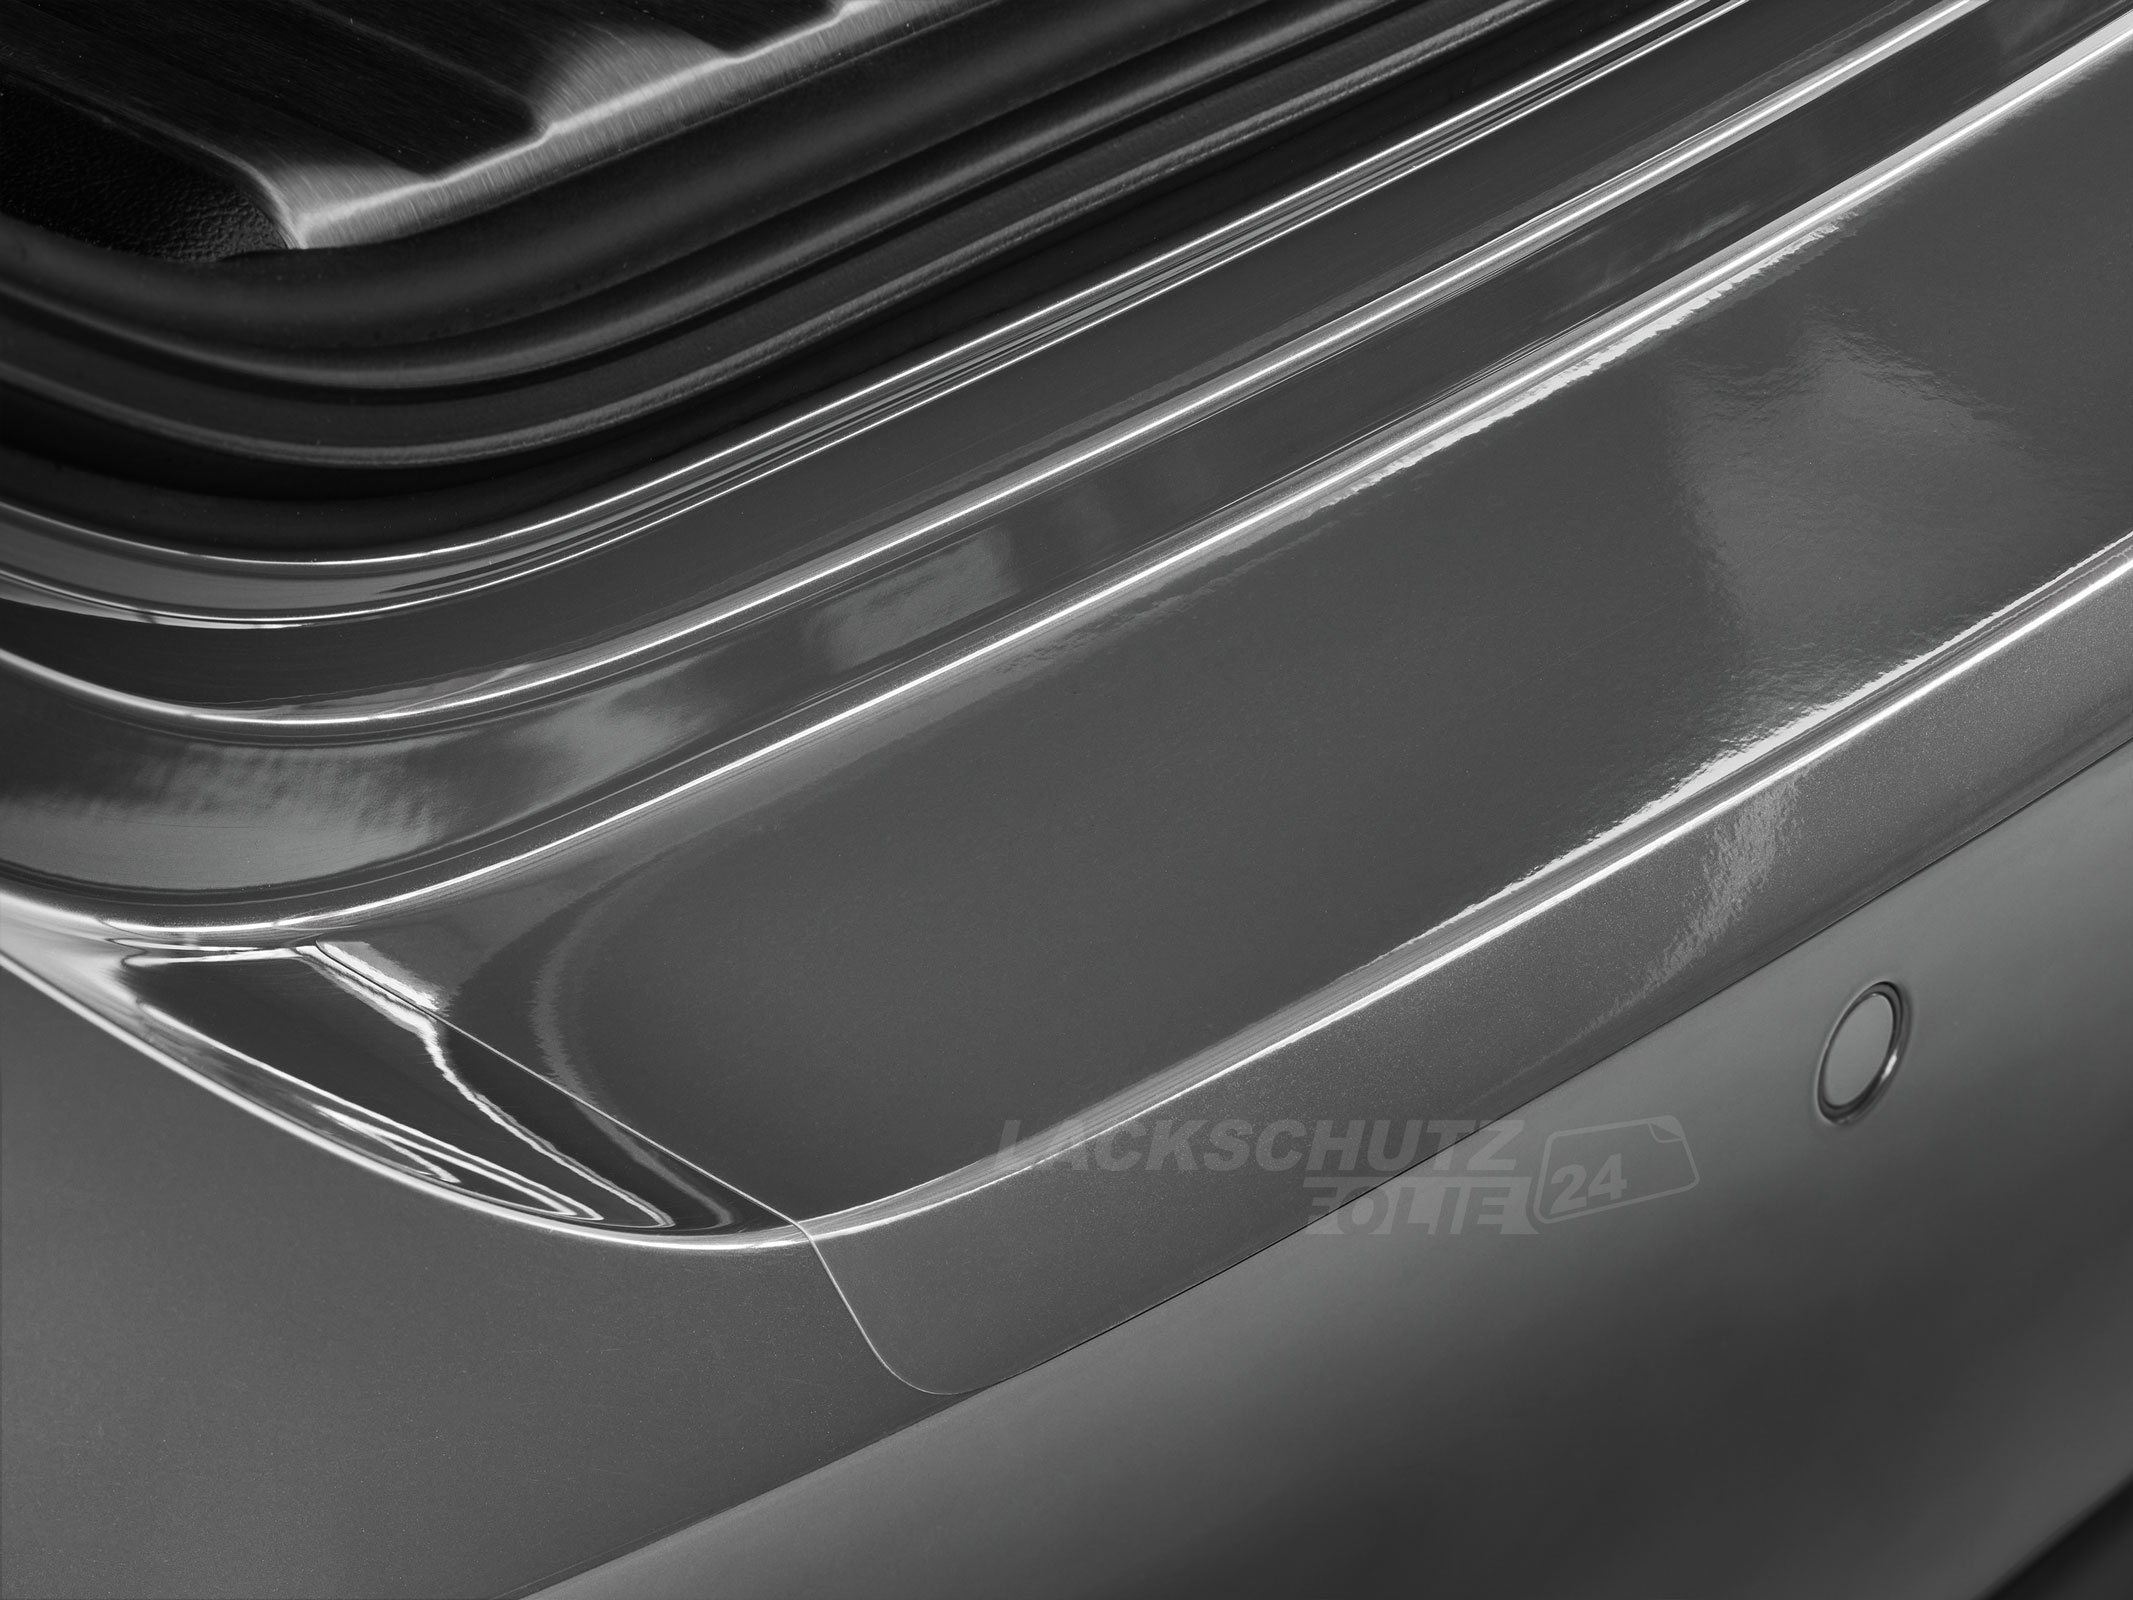 Ladekantenschutzfolie - Transparent Glatt Hochglänzend 150 µm stark für Mercedes-Benz Vito / Viano Typ W639, BJ 2005 - 2014